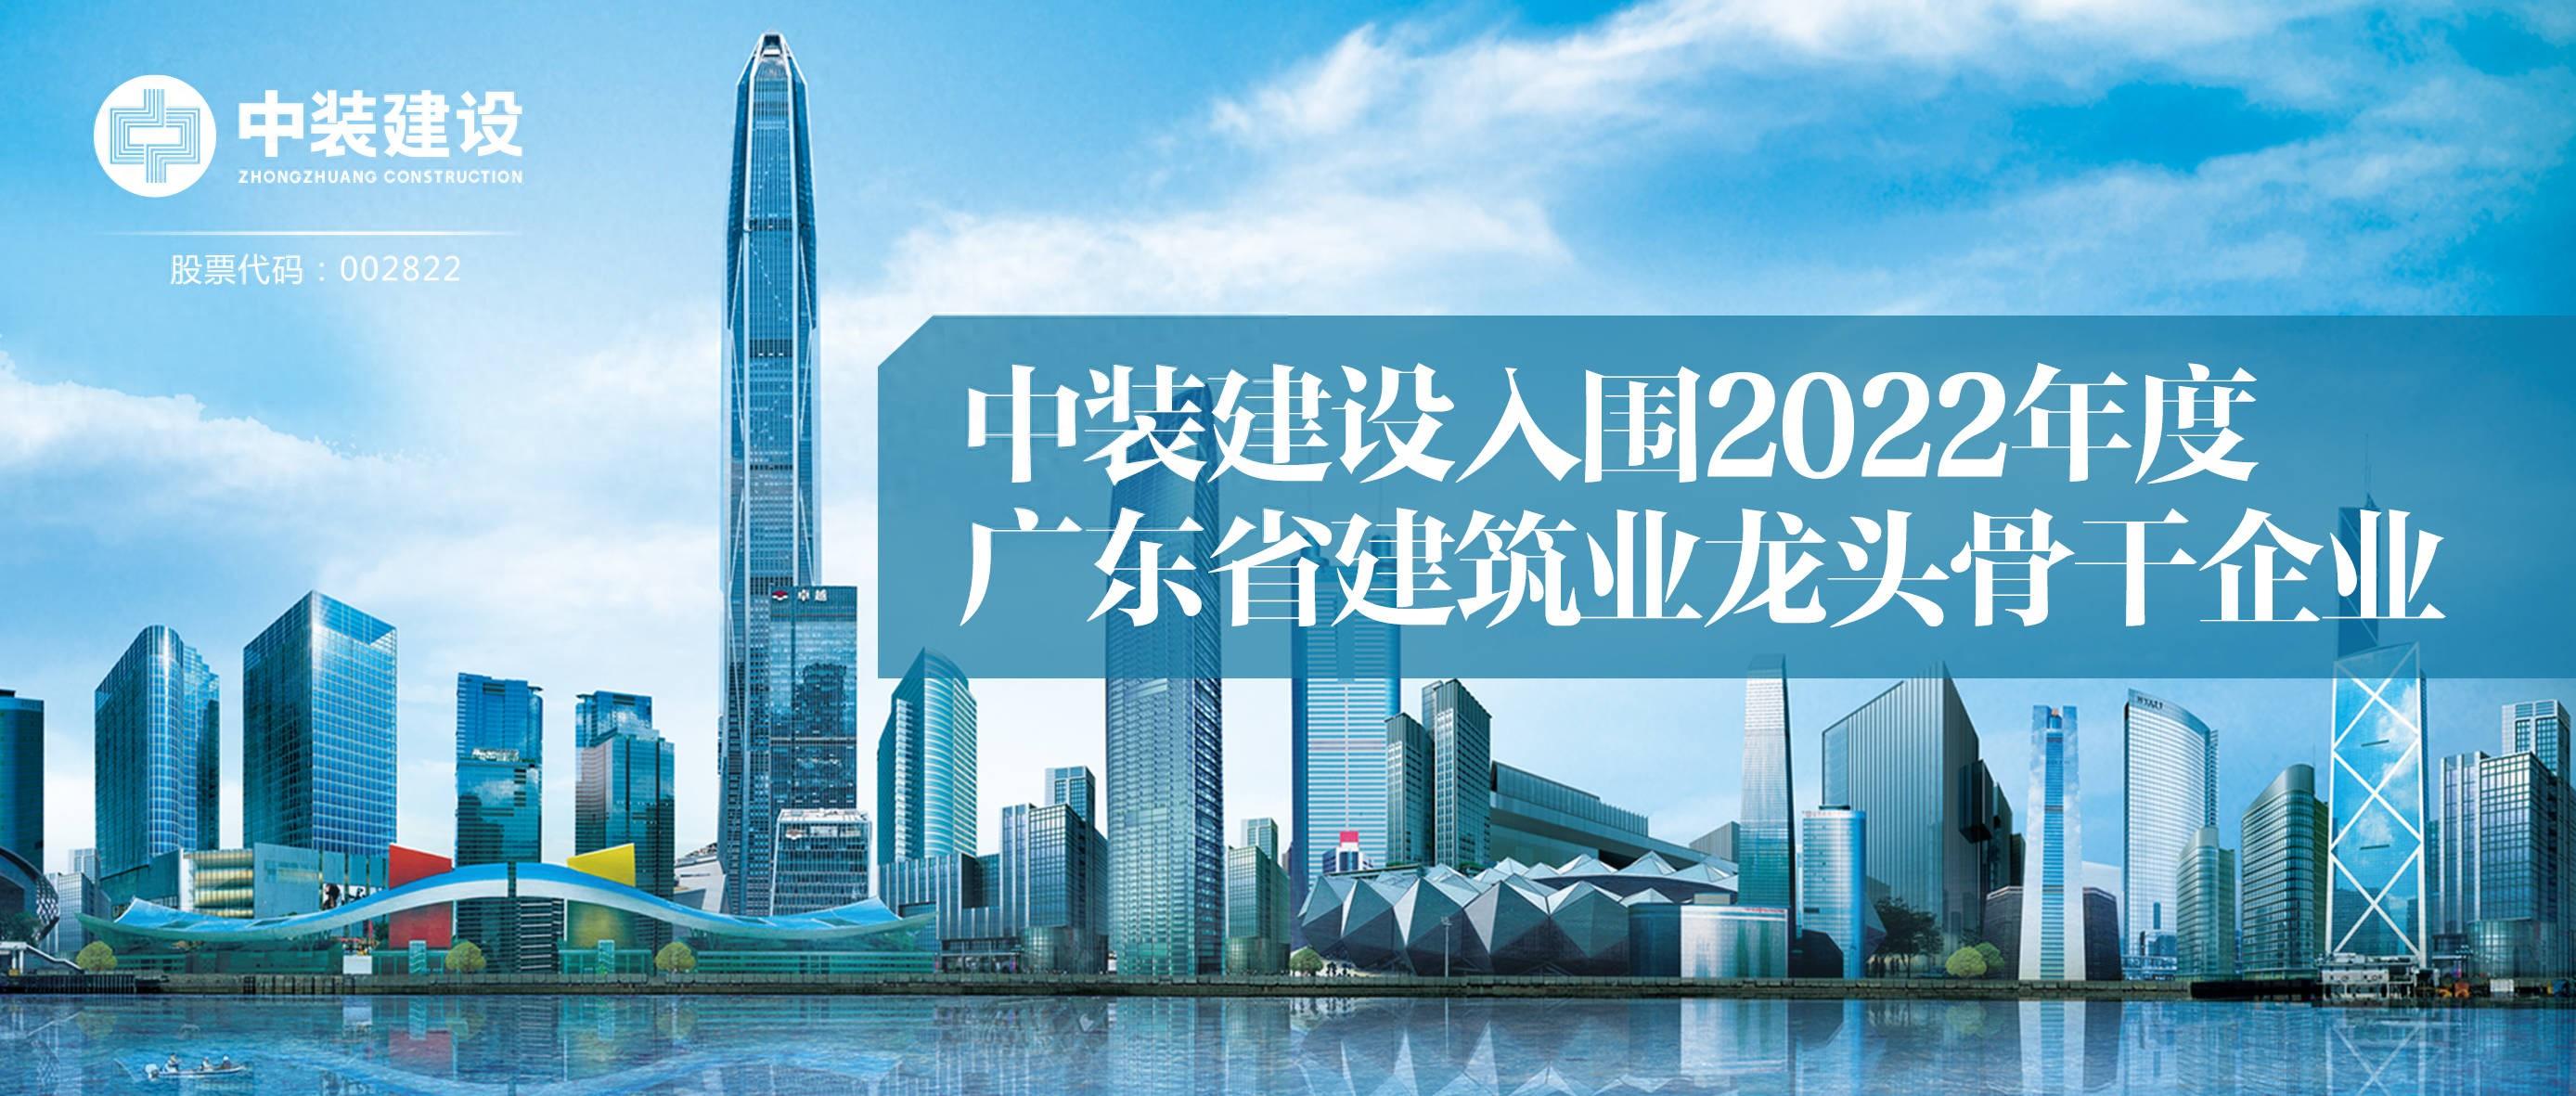 2024澳门原料网1688入围2022年度广东省建筑业龙头骨干企业